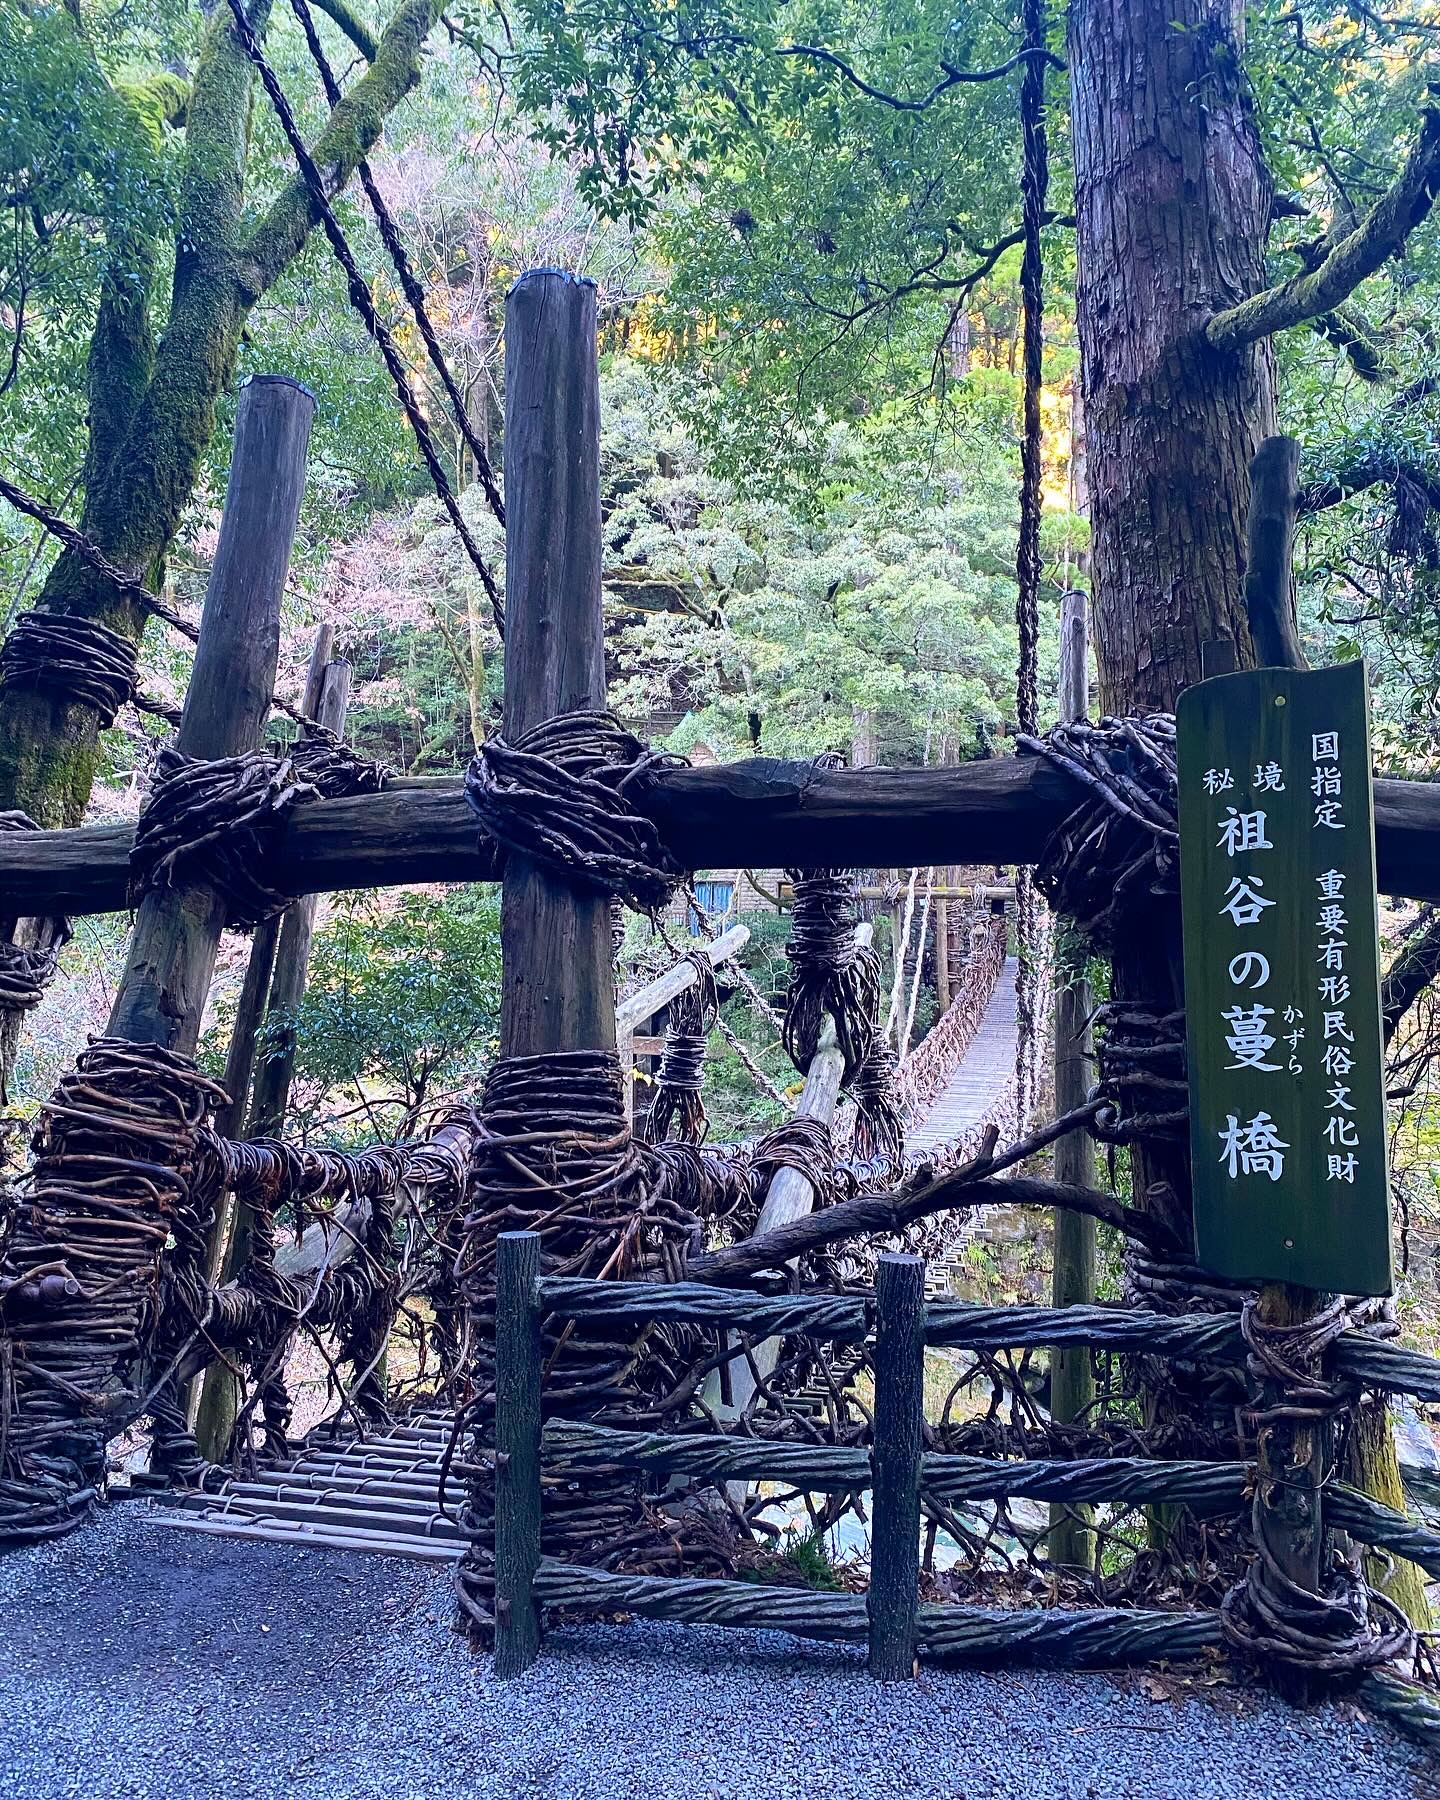 四国之德岛游 | 自驾探险日本秘境祖谷蔓桥